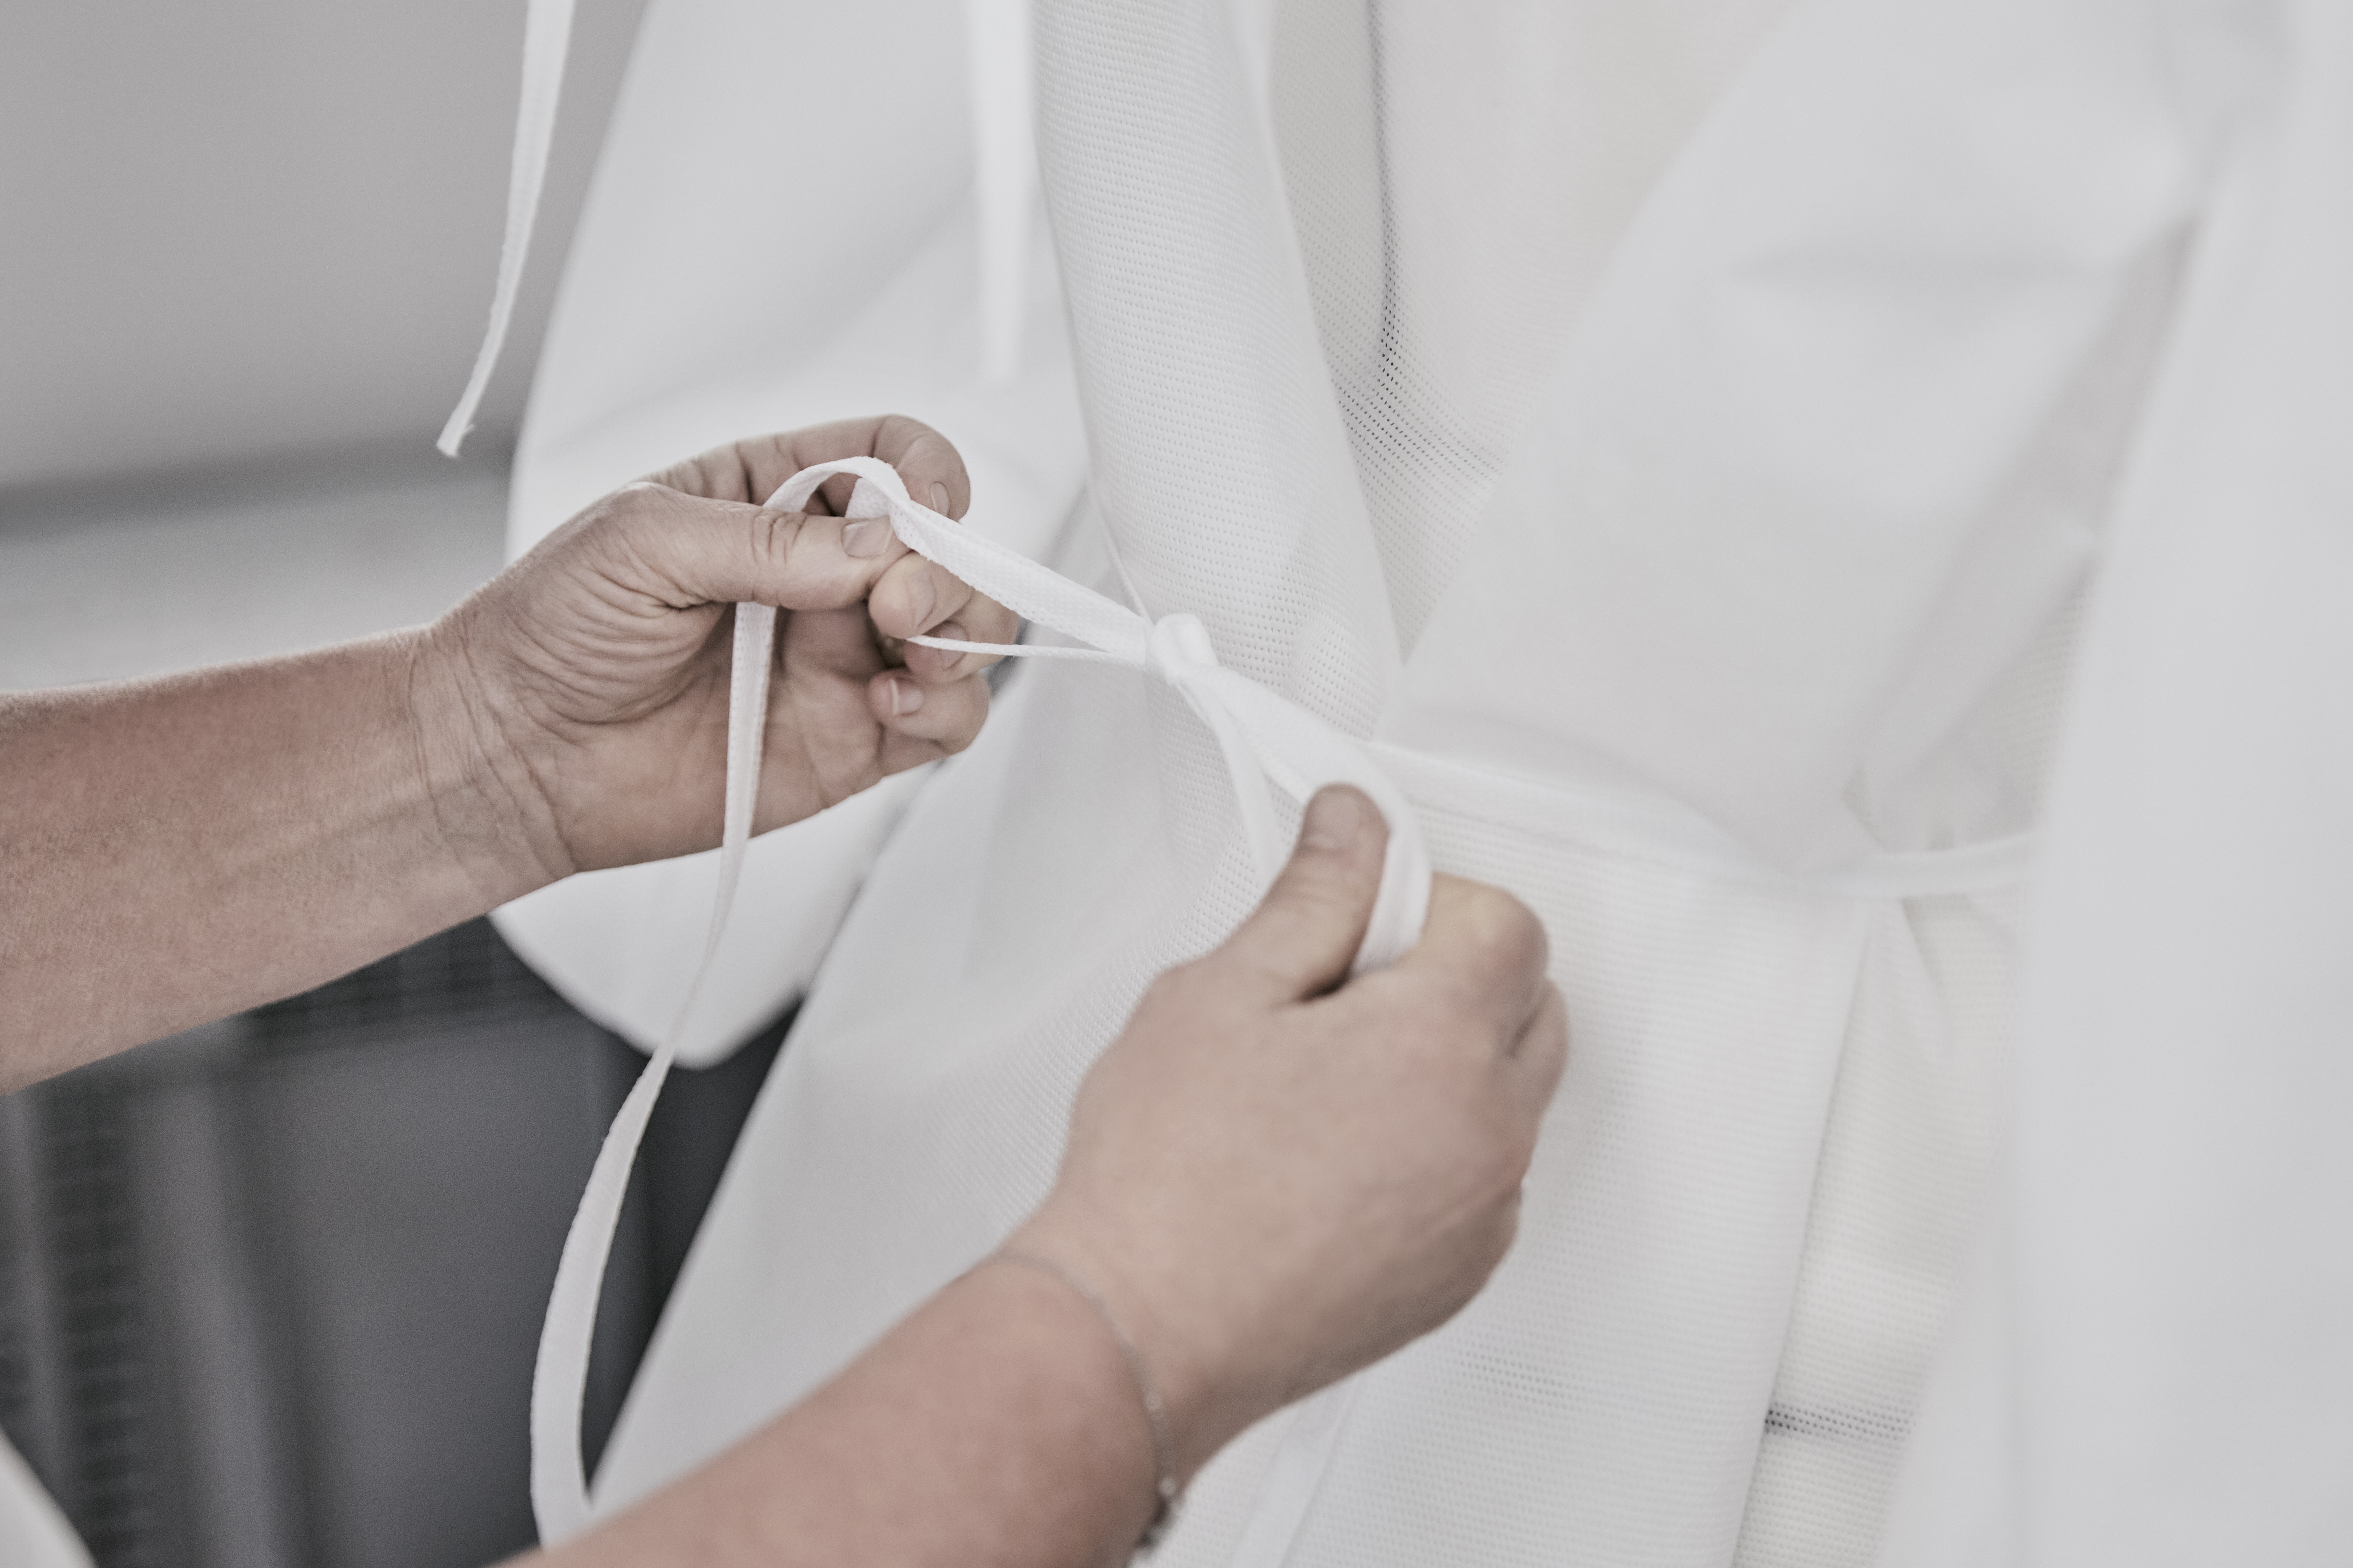 Louis Vuitton mobiliza ateliê de Paris para produzir aventais para hospitais (Foto: Piotr Stoklosa)